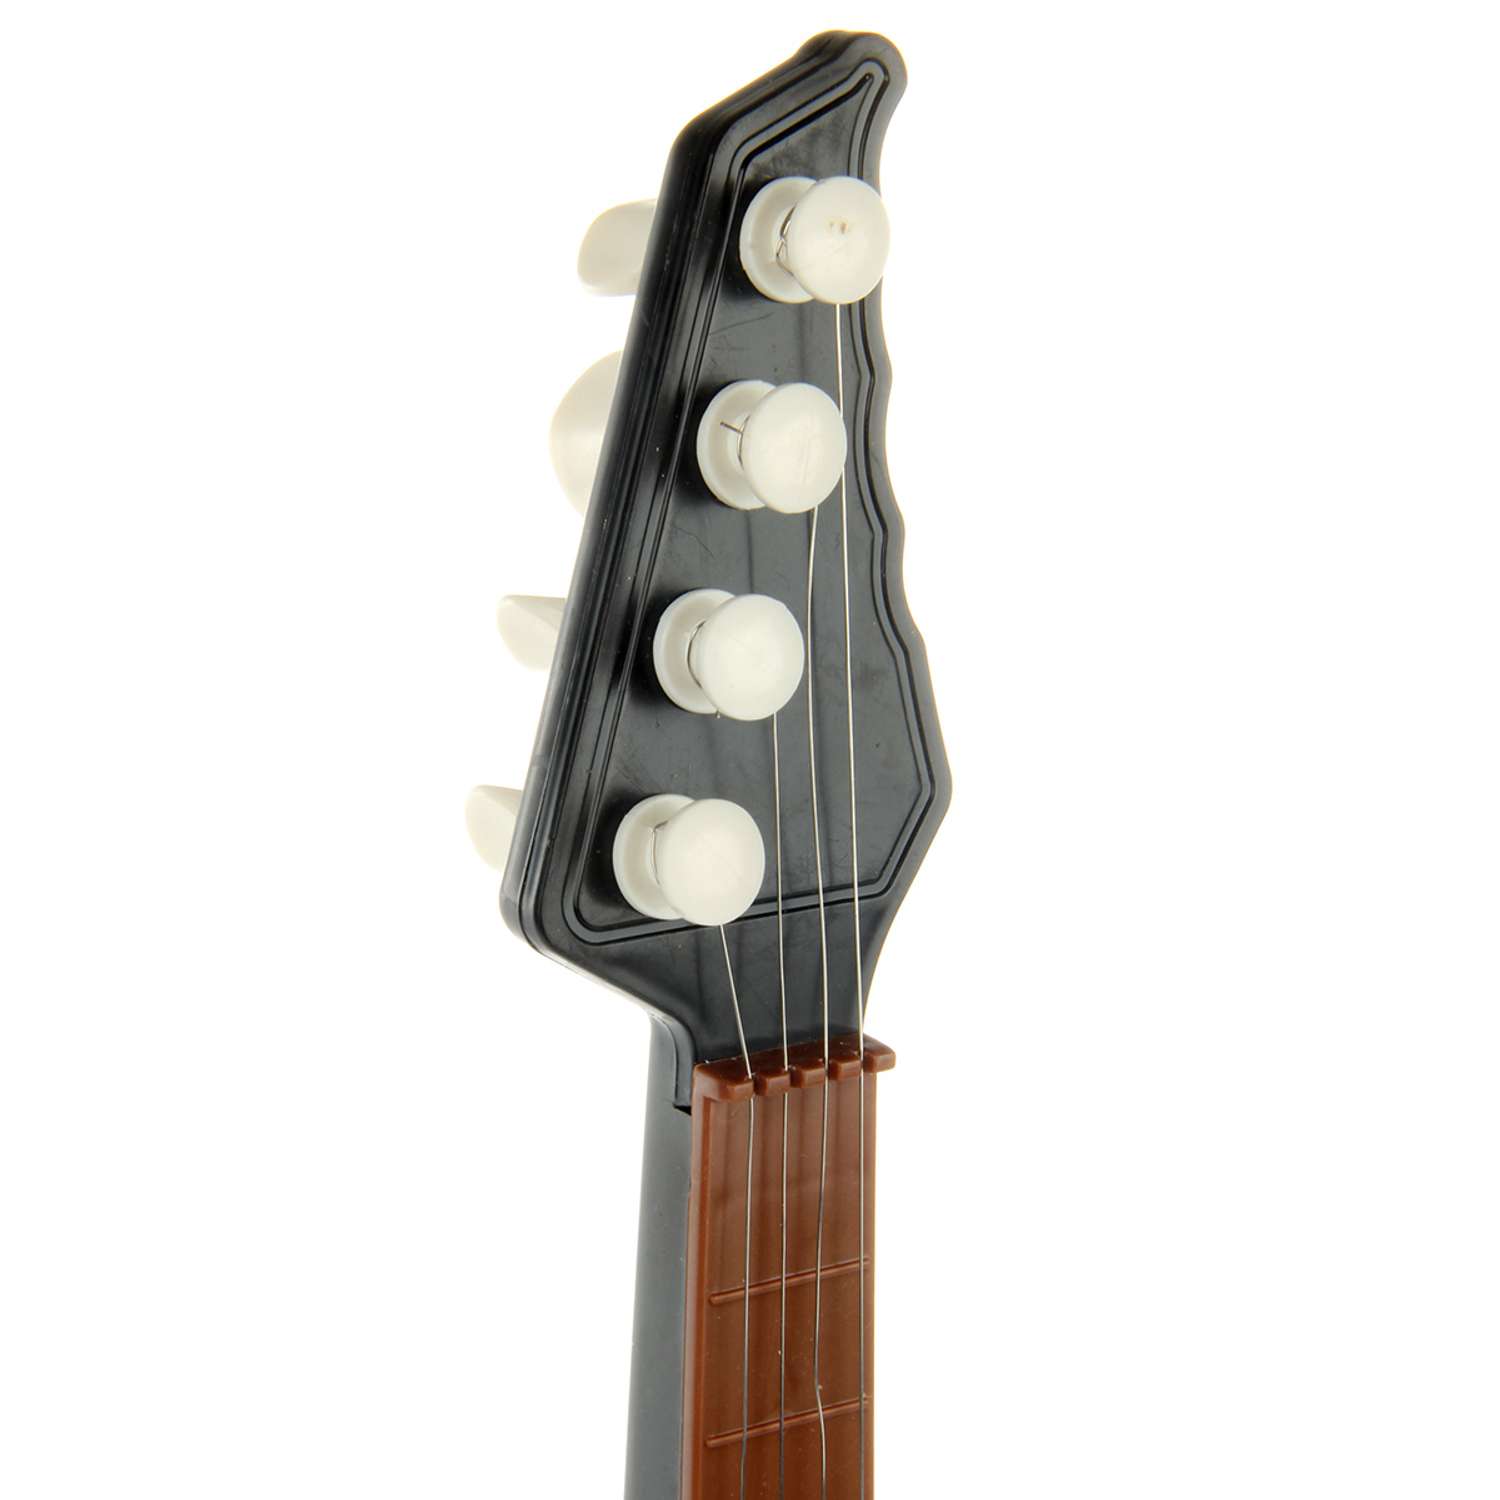 Музыкальная игрушка Veld Co гитара - фото 5